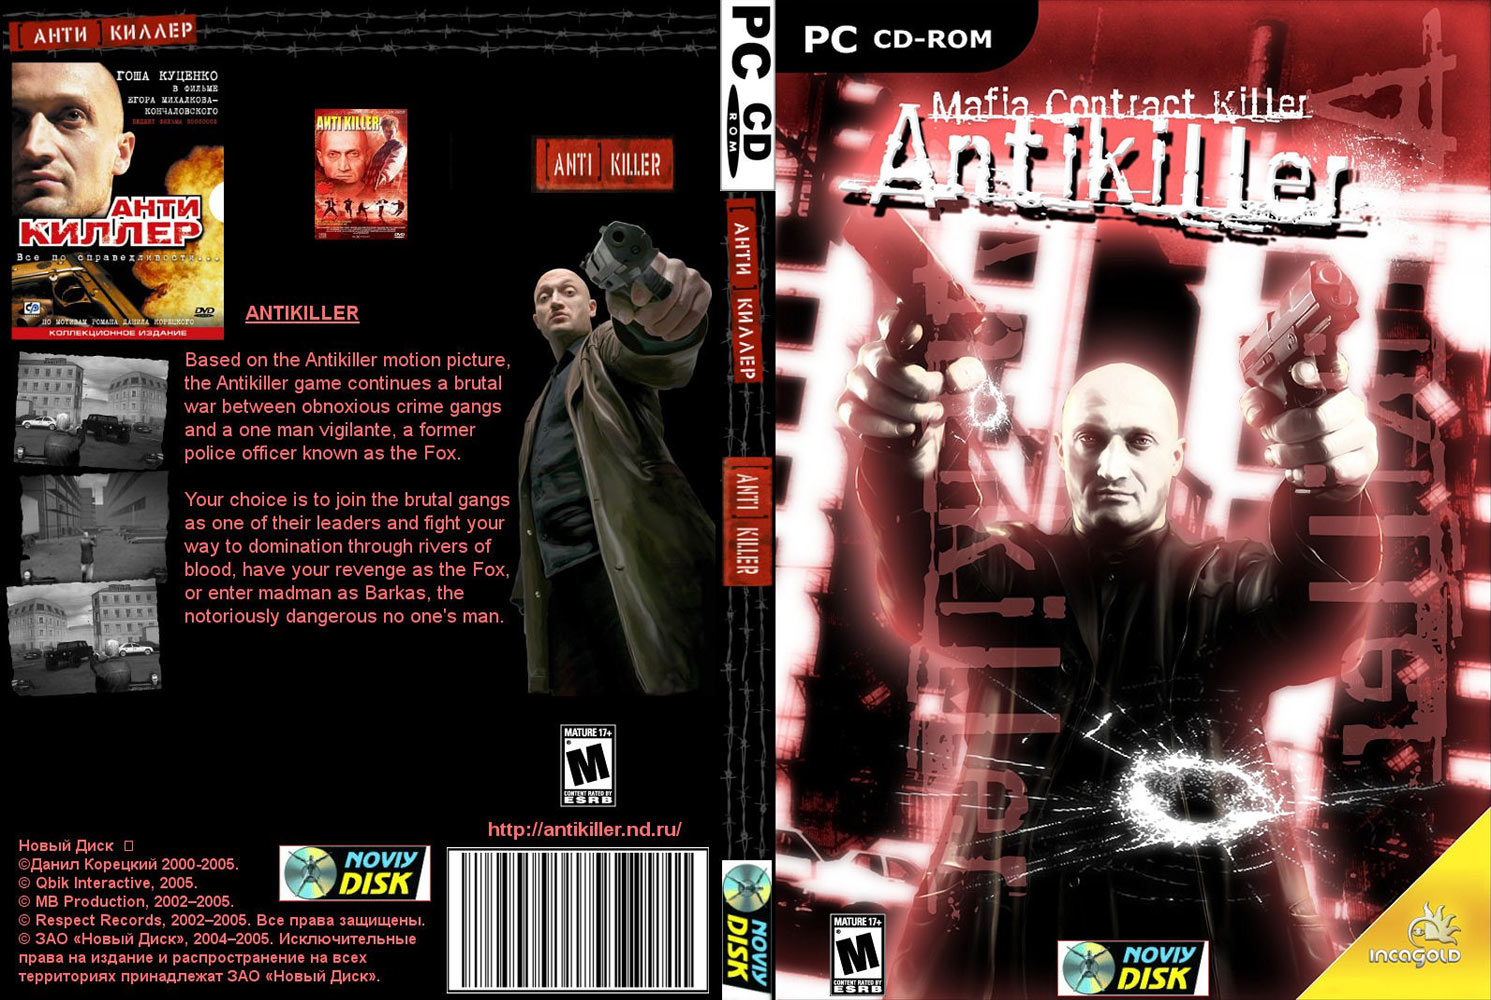 Antikiller - DVD obal